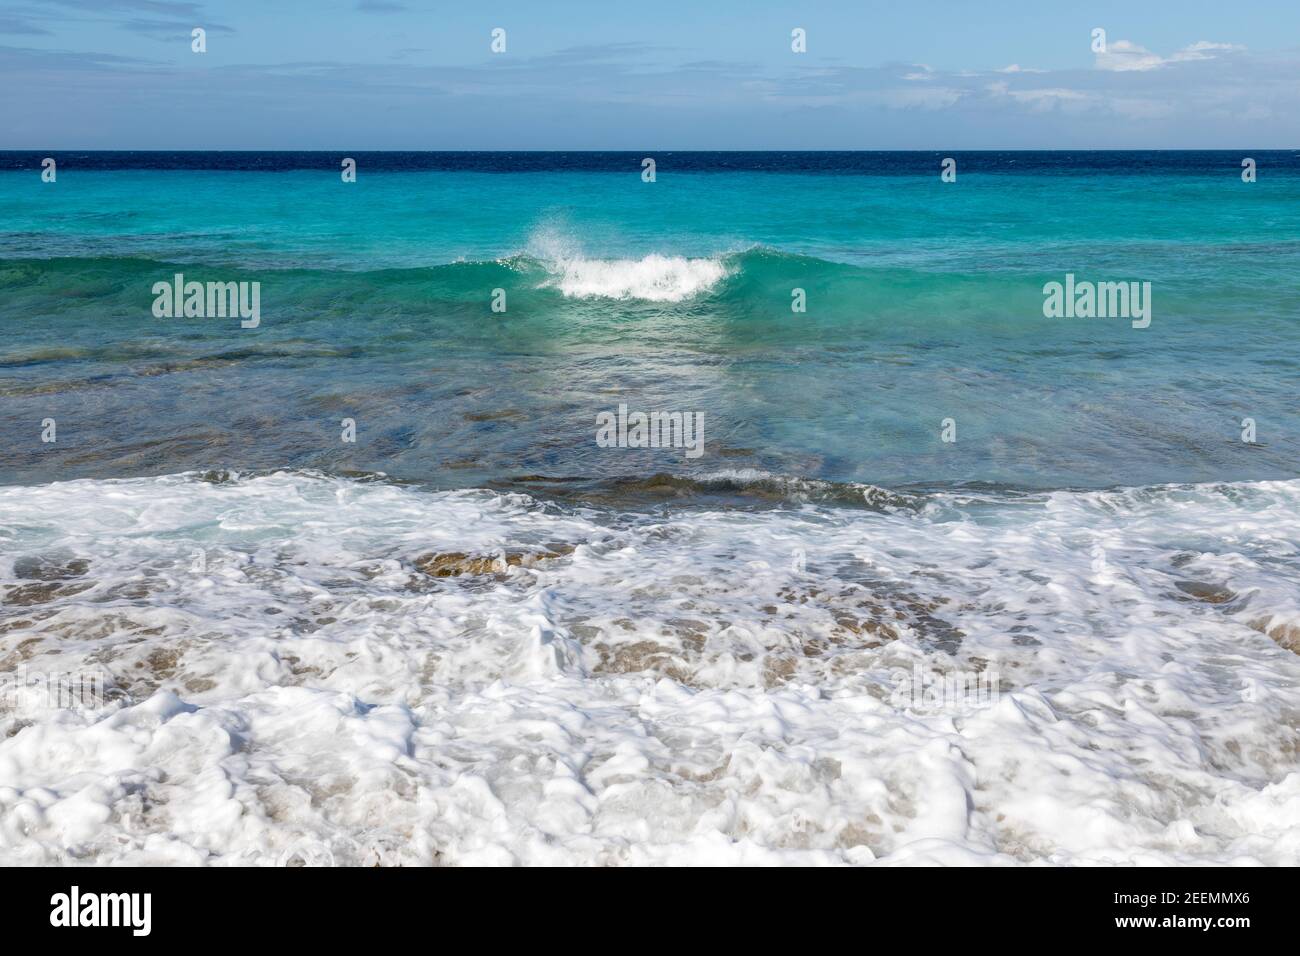 Kristallklares aquamarinfarbenes Meer mit Wellen, die in die Sonne brechen Korallenstrand bei den Sklavenhäusern auf der Karibikinsel Von Bonaire Stockfoto